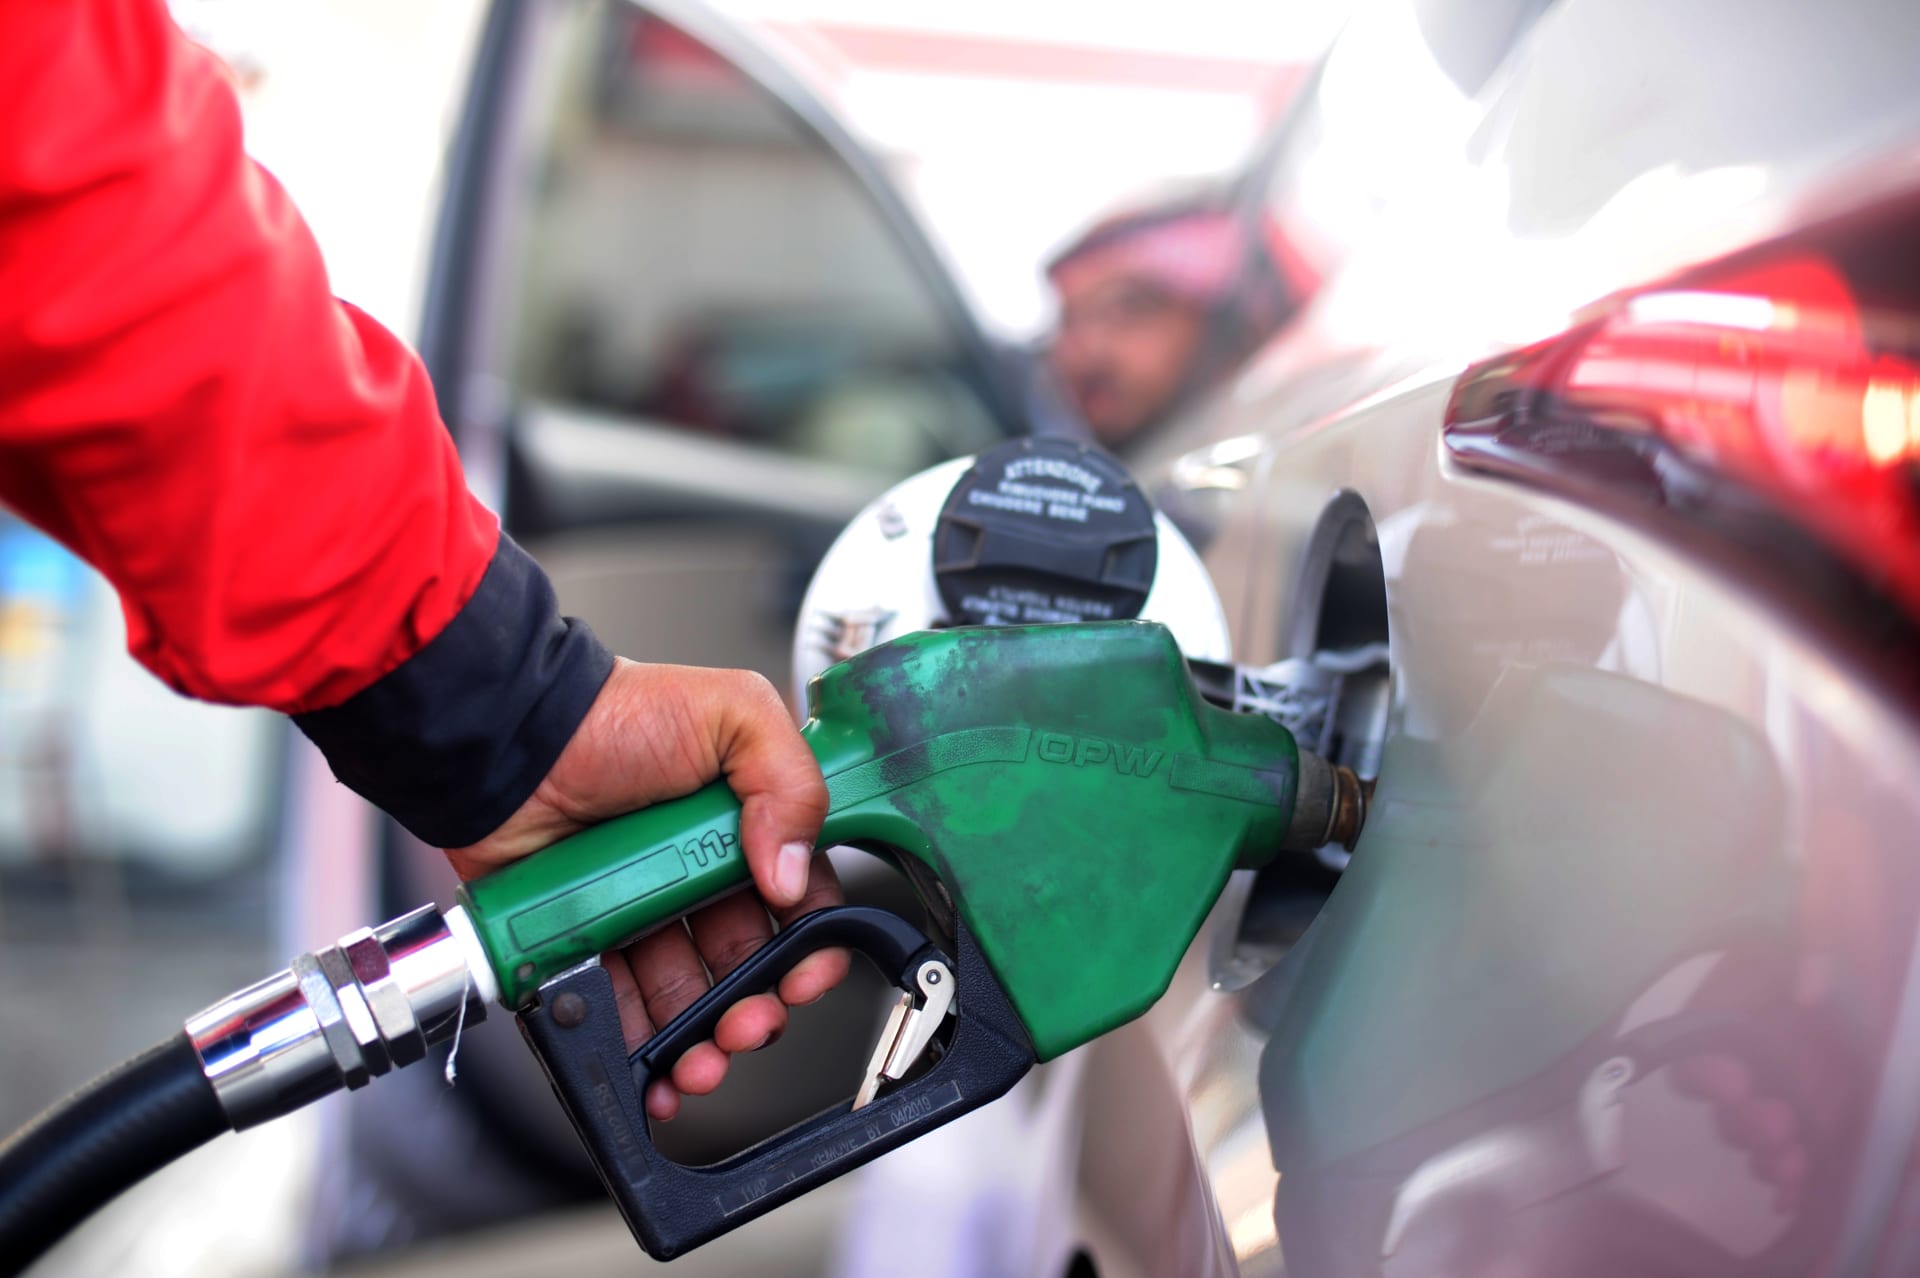 اعلان ارامكو سعر البنزين لشهر فبراير 2021 في السعودية جمادي الاخر مع مراجعة سعر بنزين 91 وبنزين 5